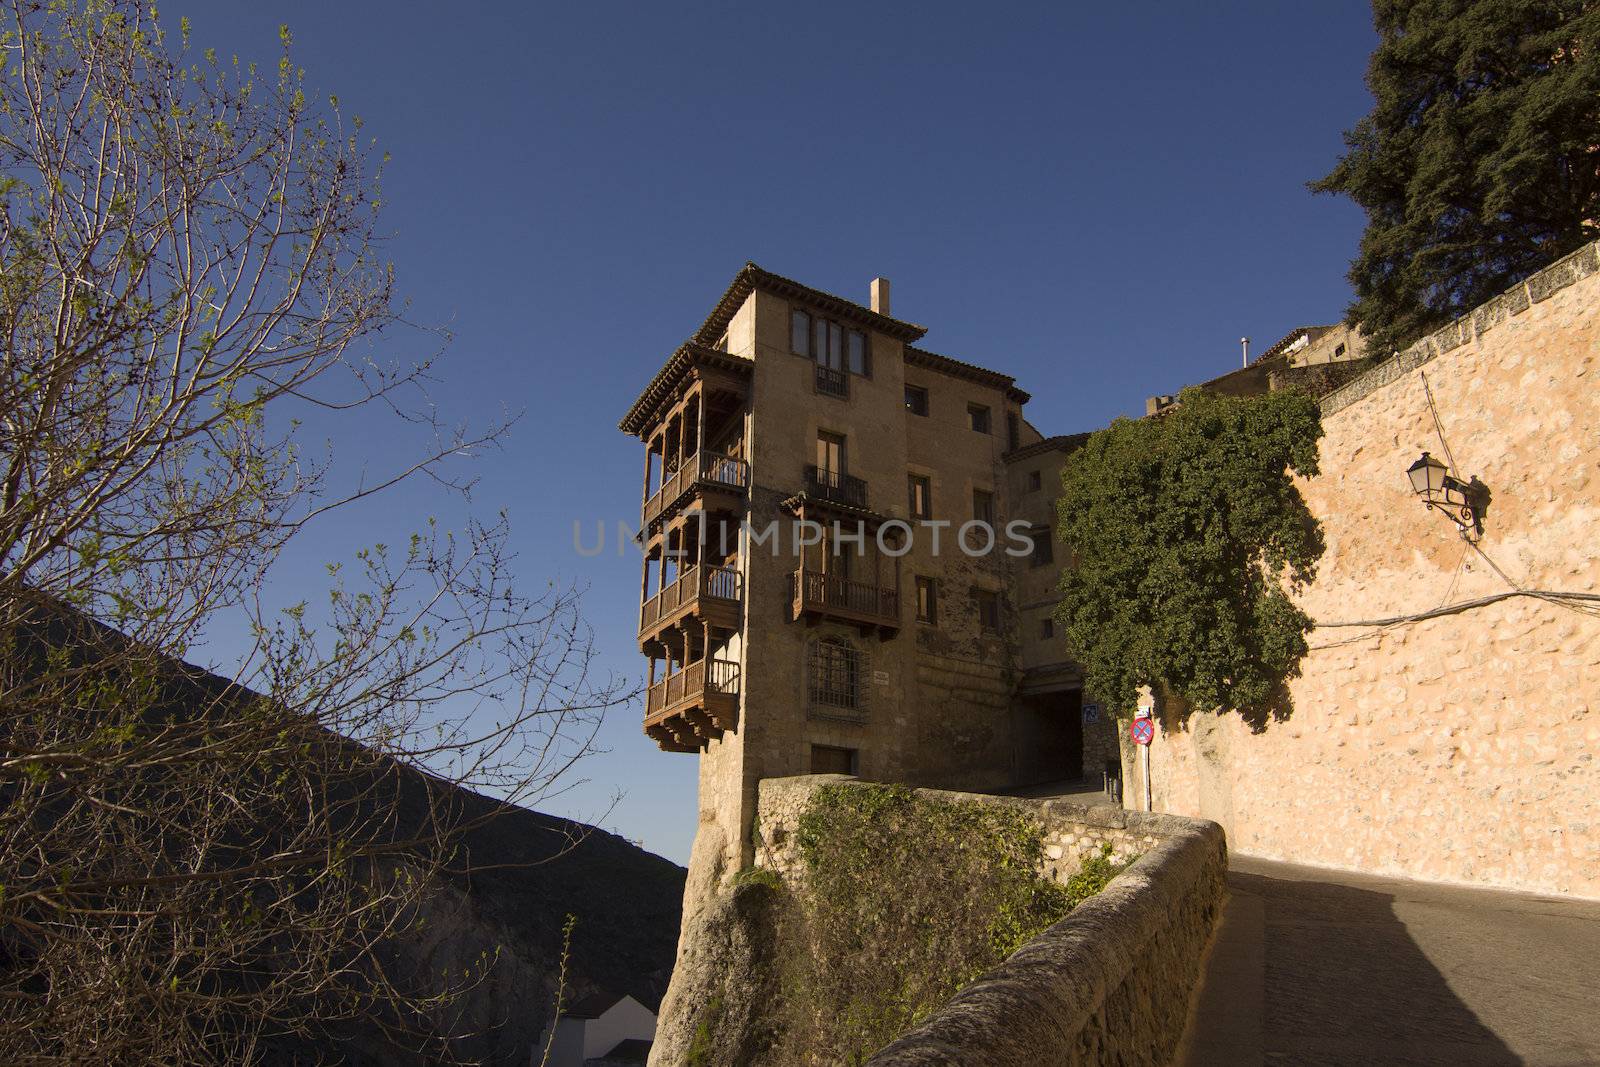 Hanging house in Cuenca, Spain by dannyus